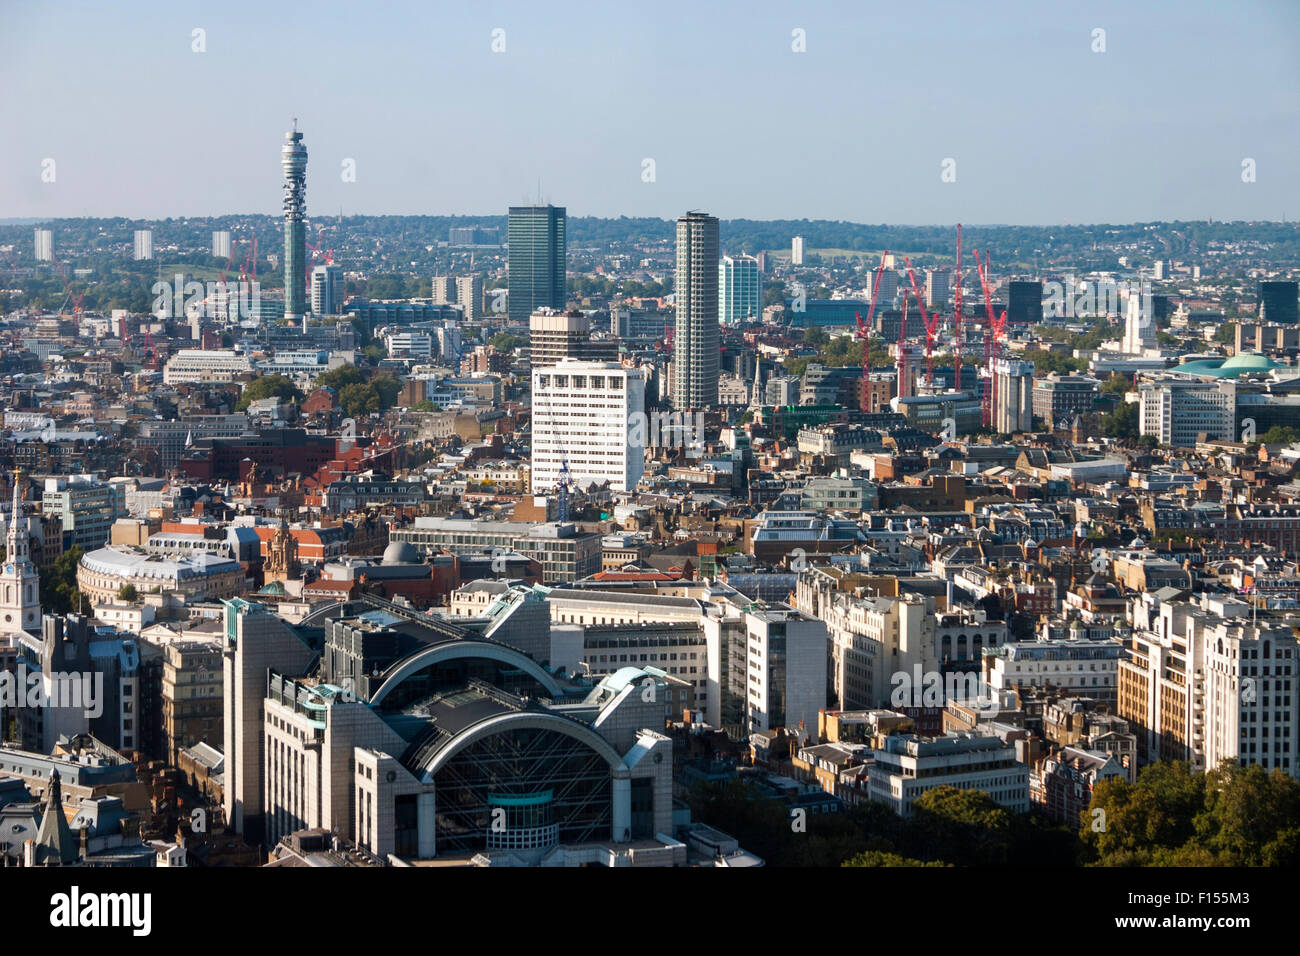 26 Settembre 2008 - vista aerea di Londra con la BT Tower e la stazione ferroviaria di Charing Cross come si vede dal London Eye Foto Stock